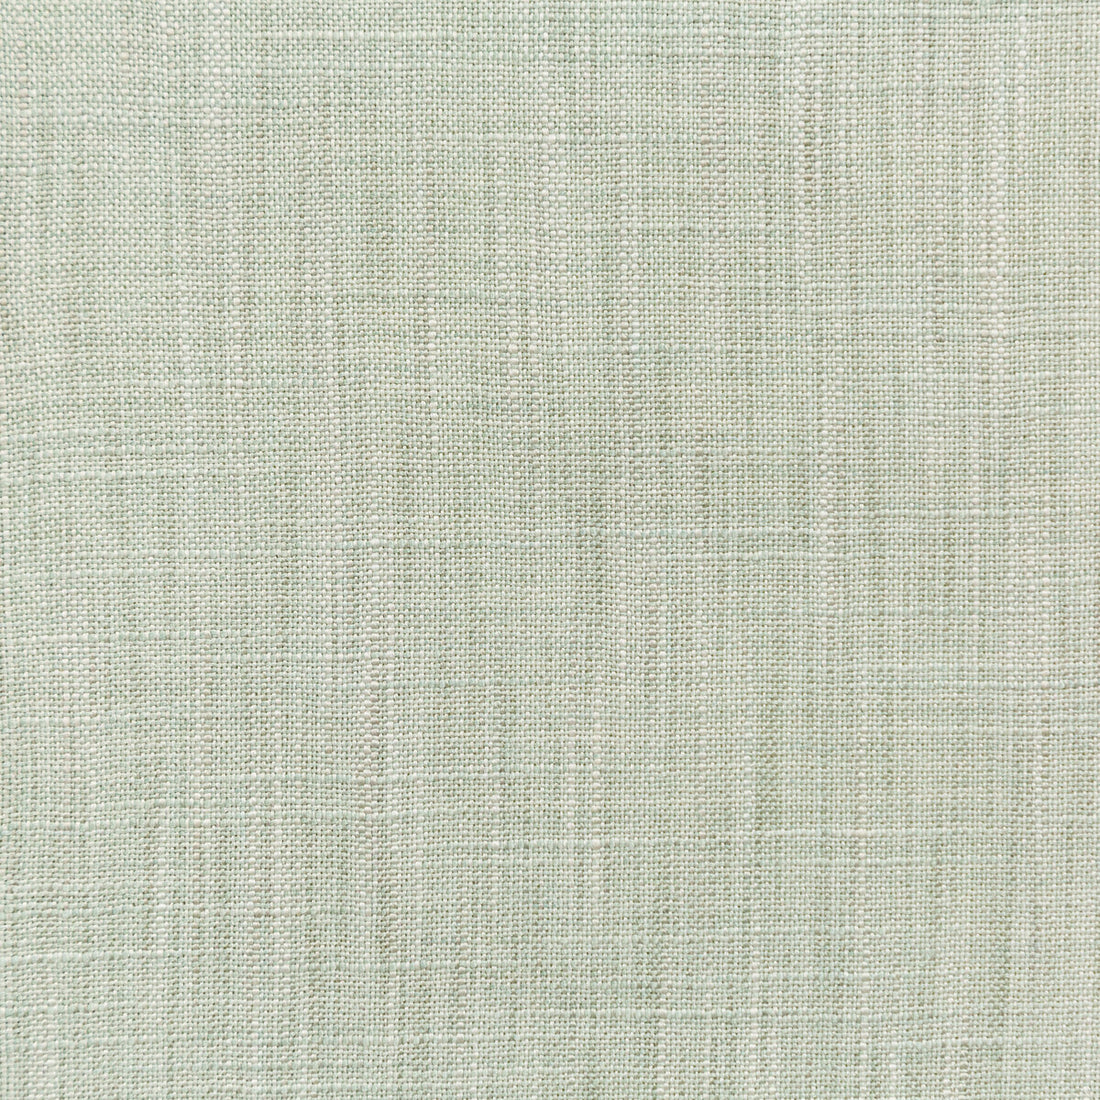 Kravet Basics fabric in 4668-23 color - pattern 4668.23.0 - by Kravet Basics